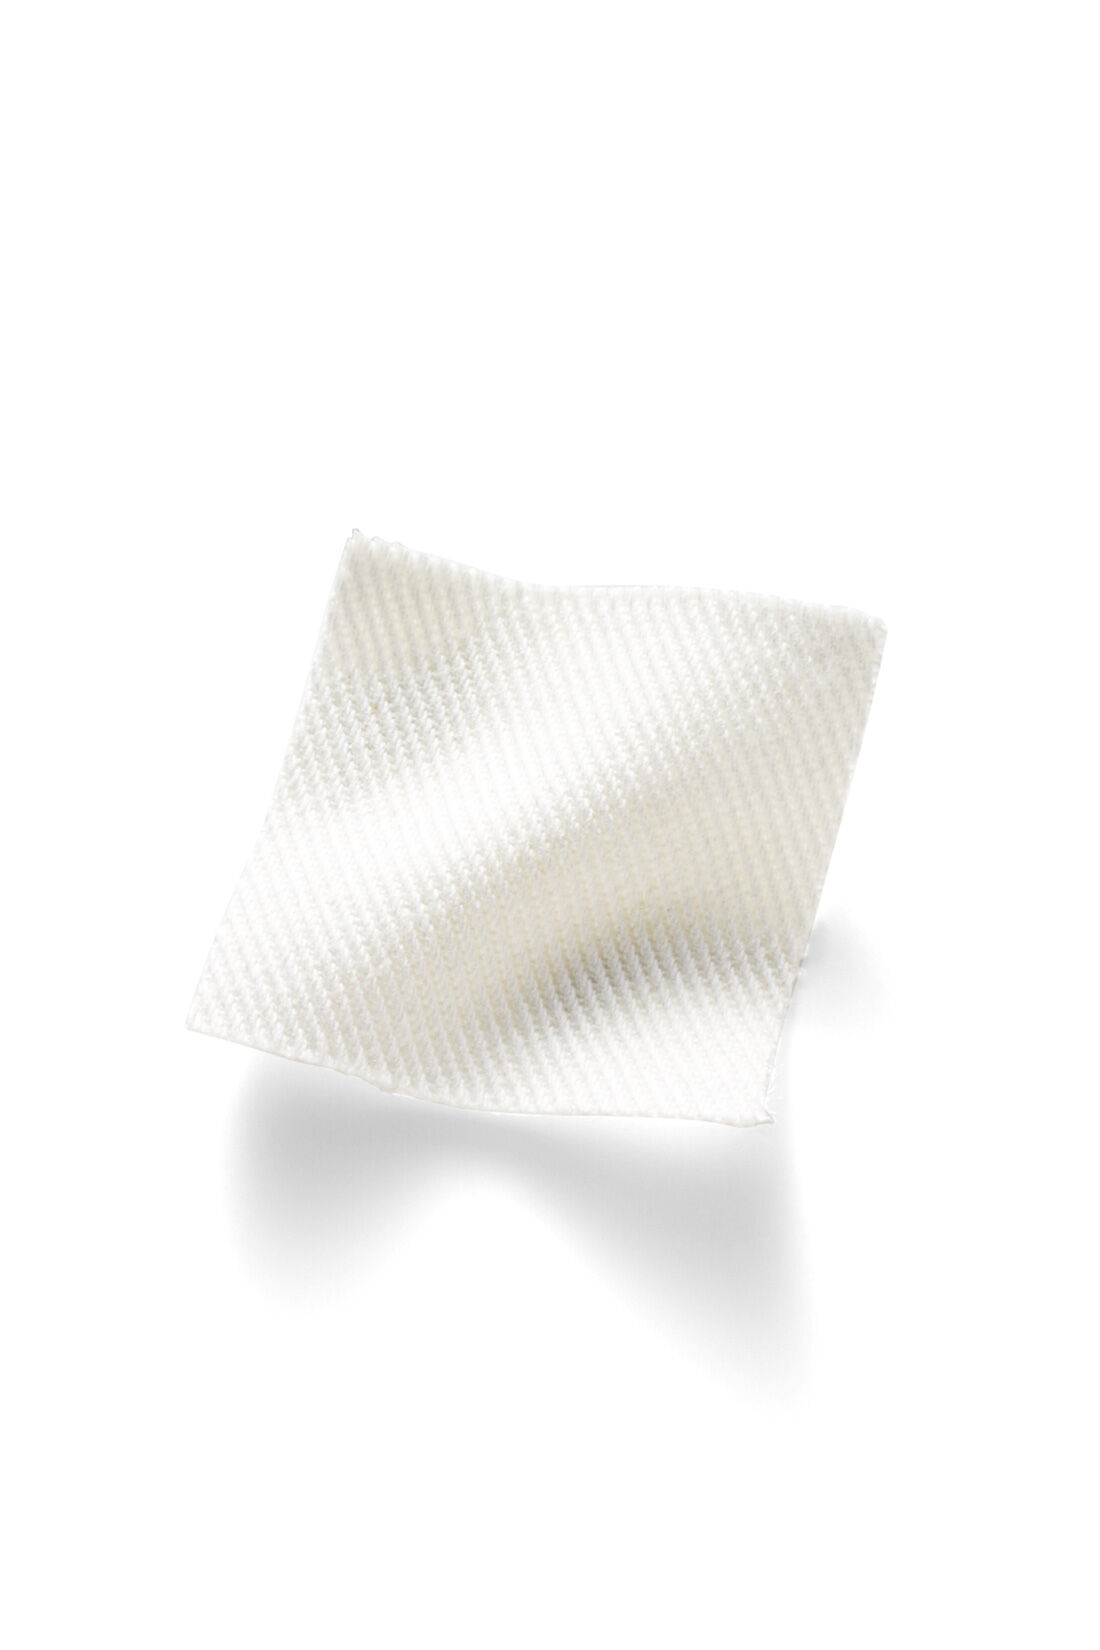 IEDIT|IEDIT[イディット]　小森美穂子さんコラボ すっきりはけるデニムロングスカート〈ホワイト〉|しっかりとした厚みがある、透けにくいデニム生地をセレクト。